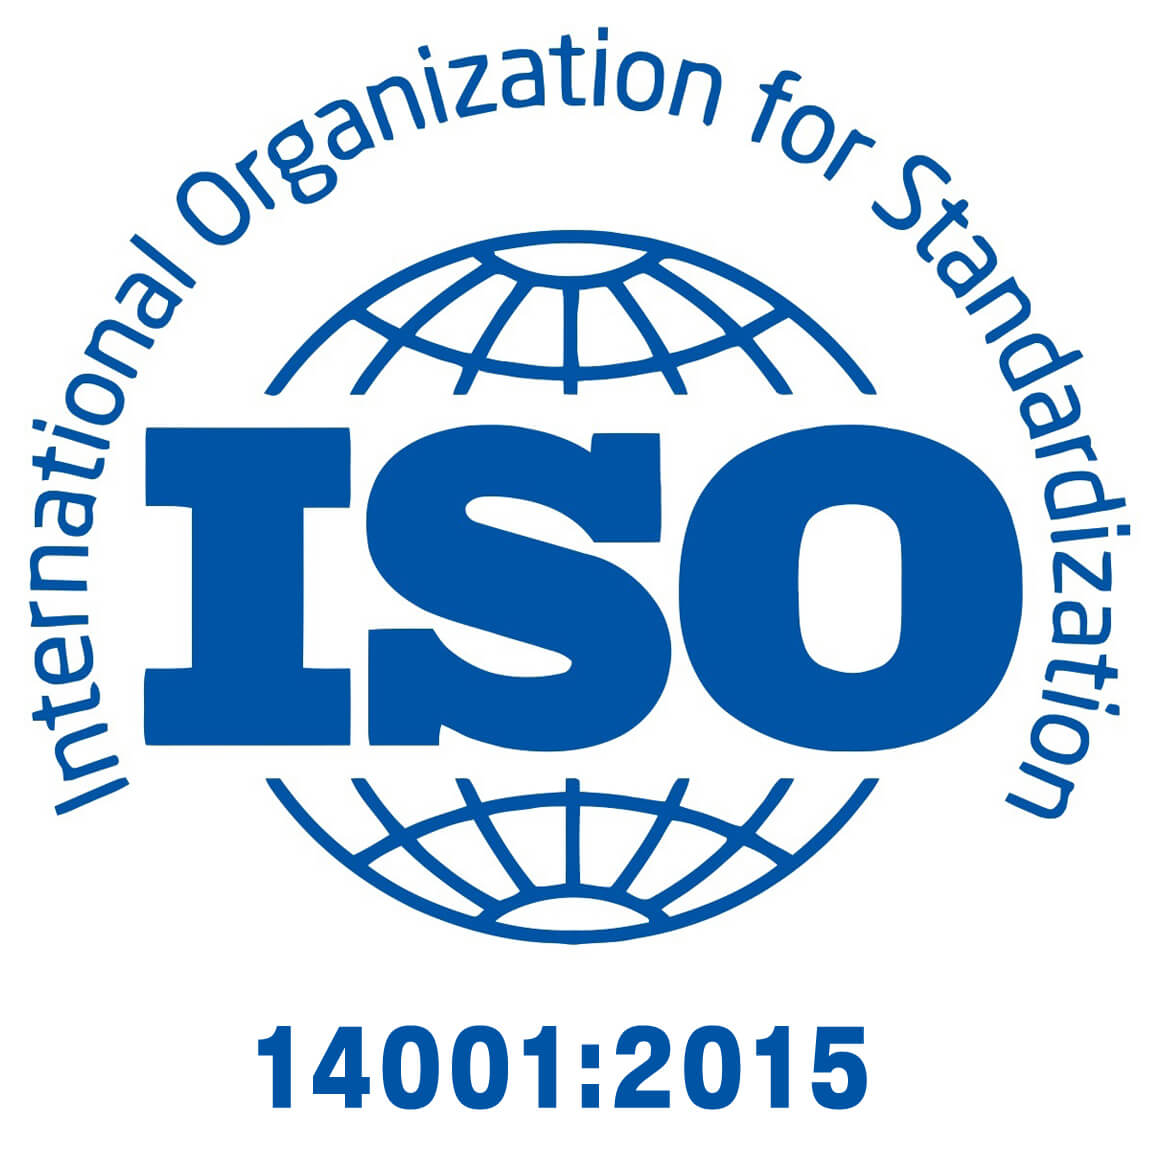 ĐÀO TẠO NHẬN THỨC CHUNG VỀ HỆ THỐNG QUẢN LÝ MÔI TRƯỜNG THEO TCVN ISO 14001:2015